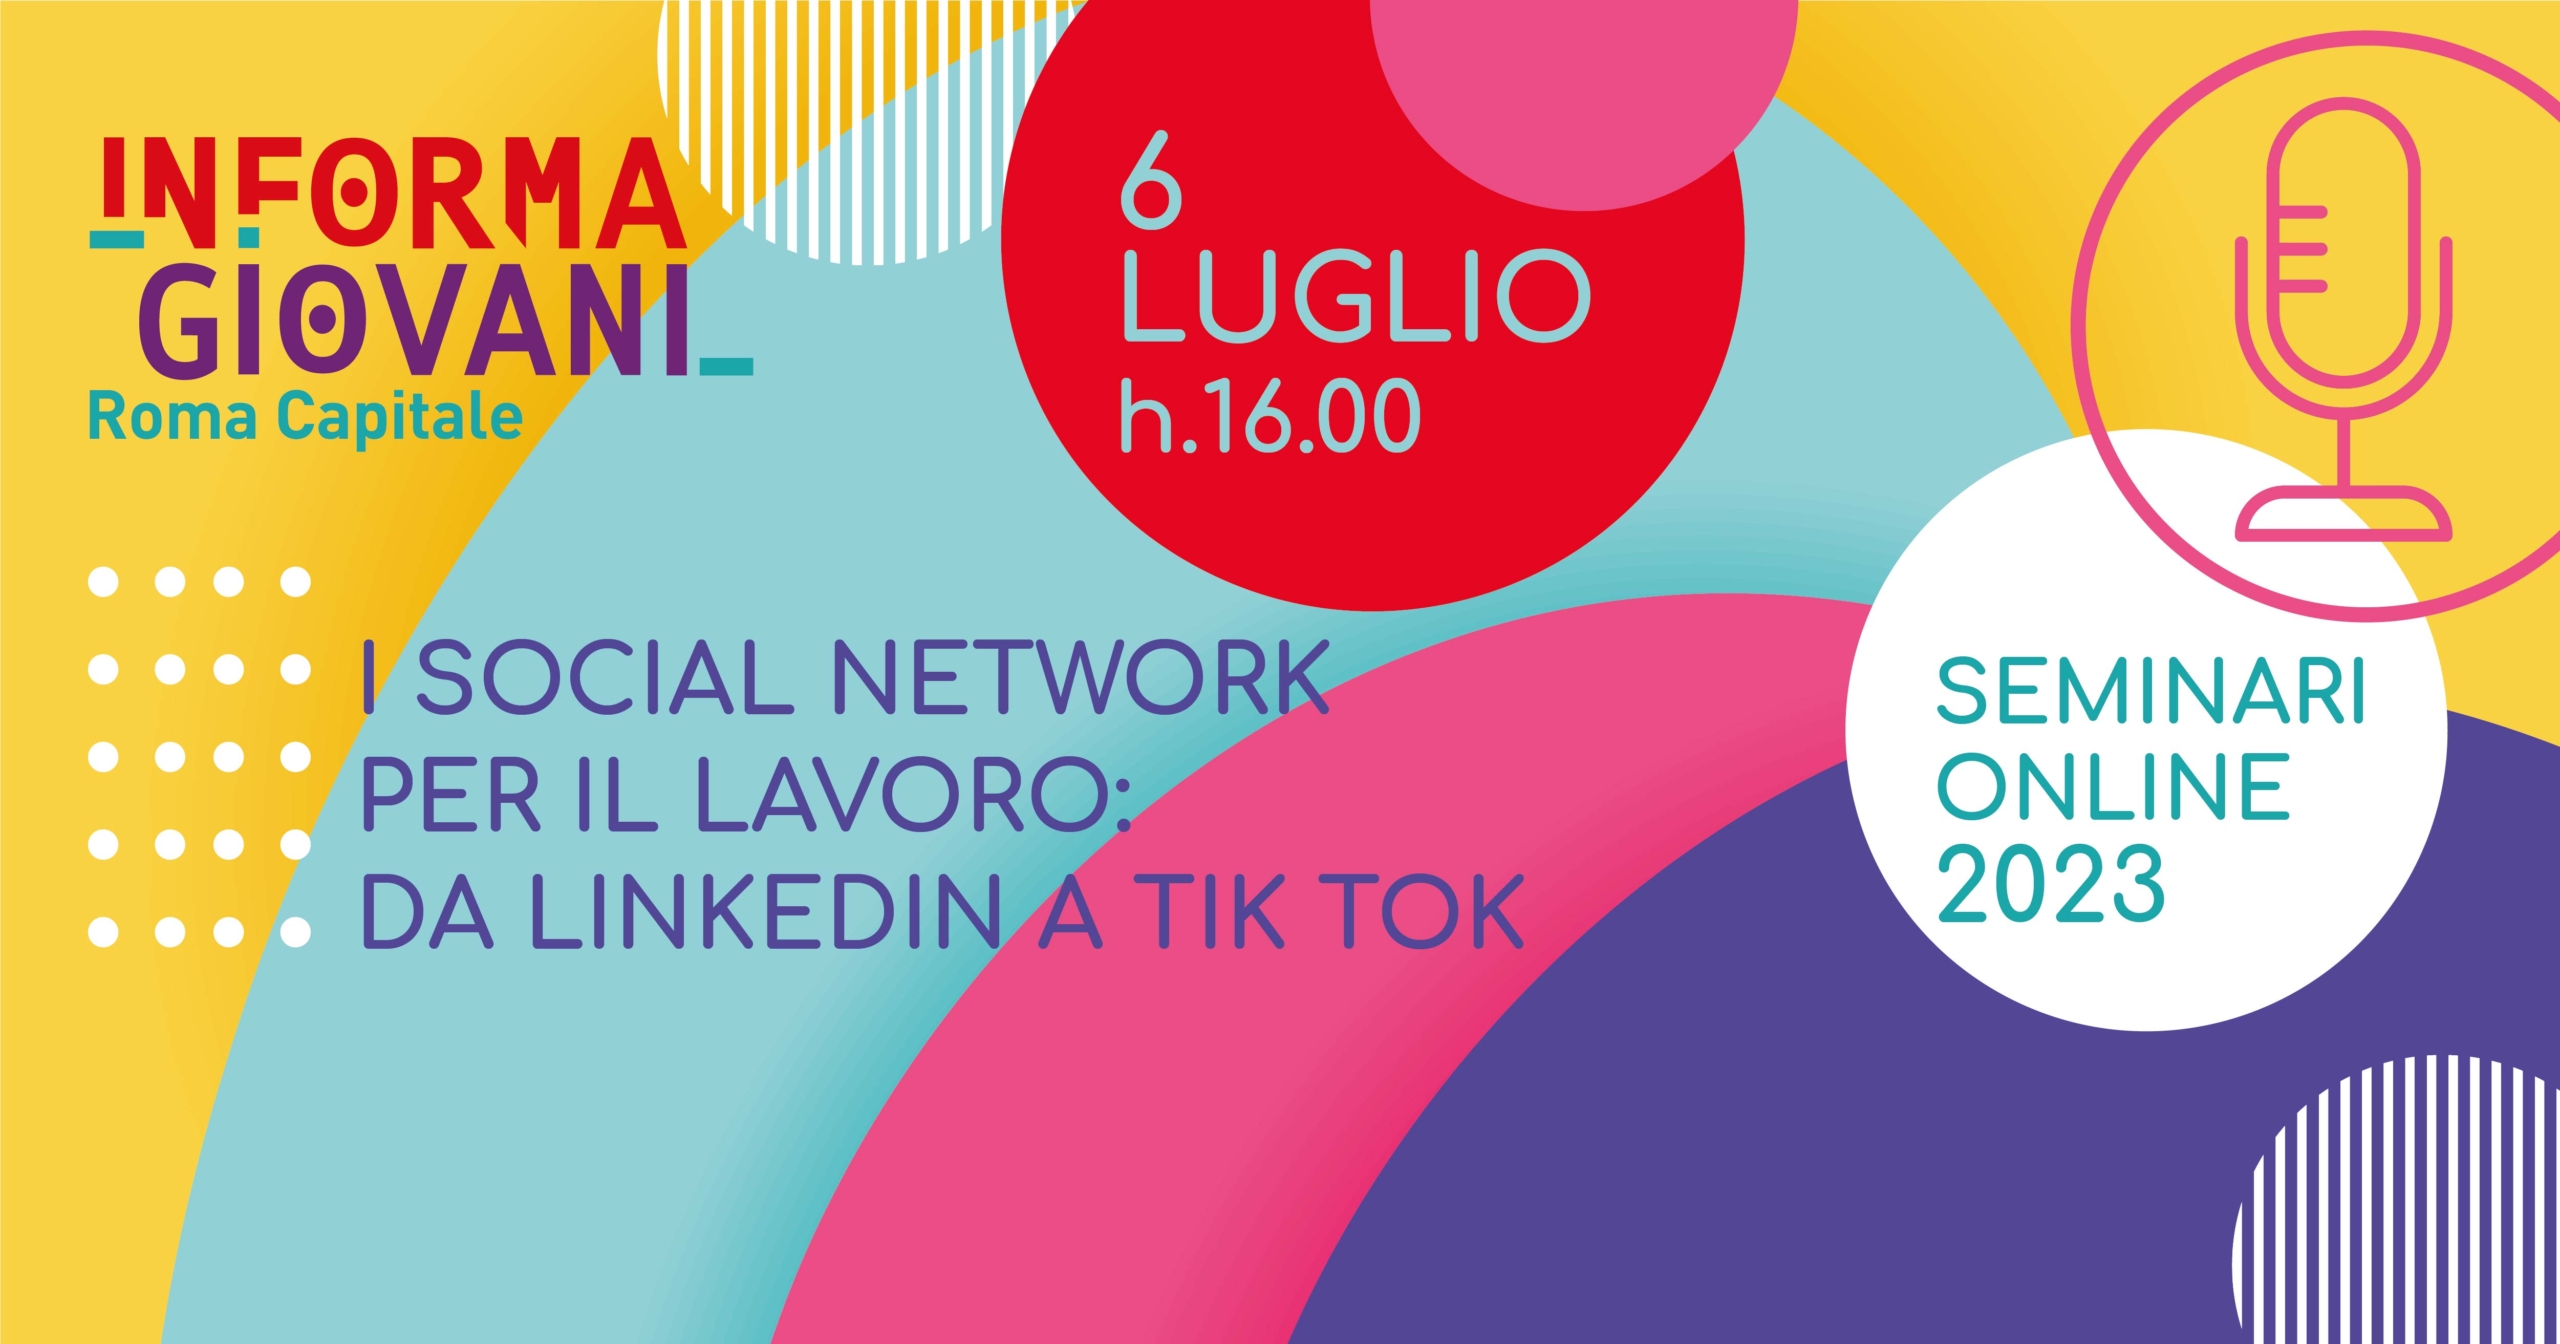 I social network per il lavoro: da LinkedIn a Tik Tok - Informagiovani Roma